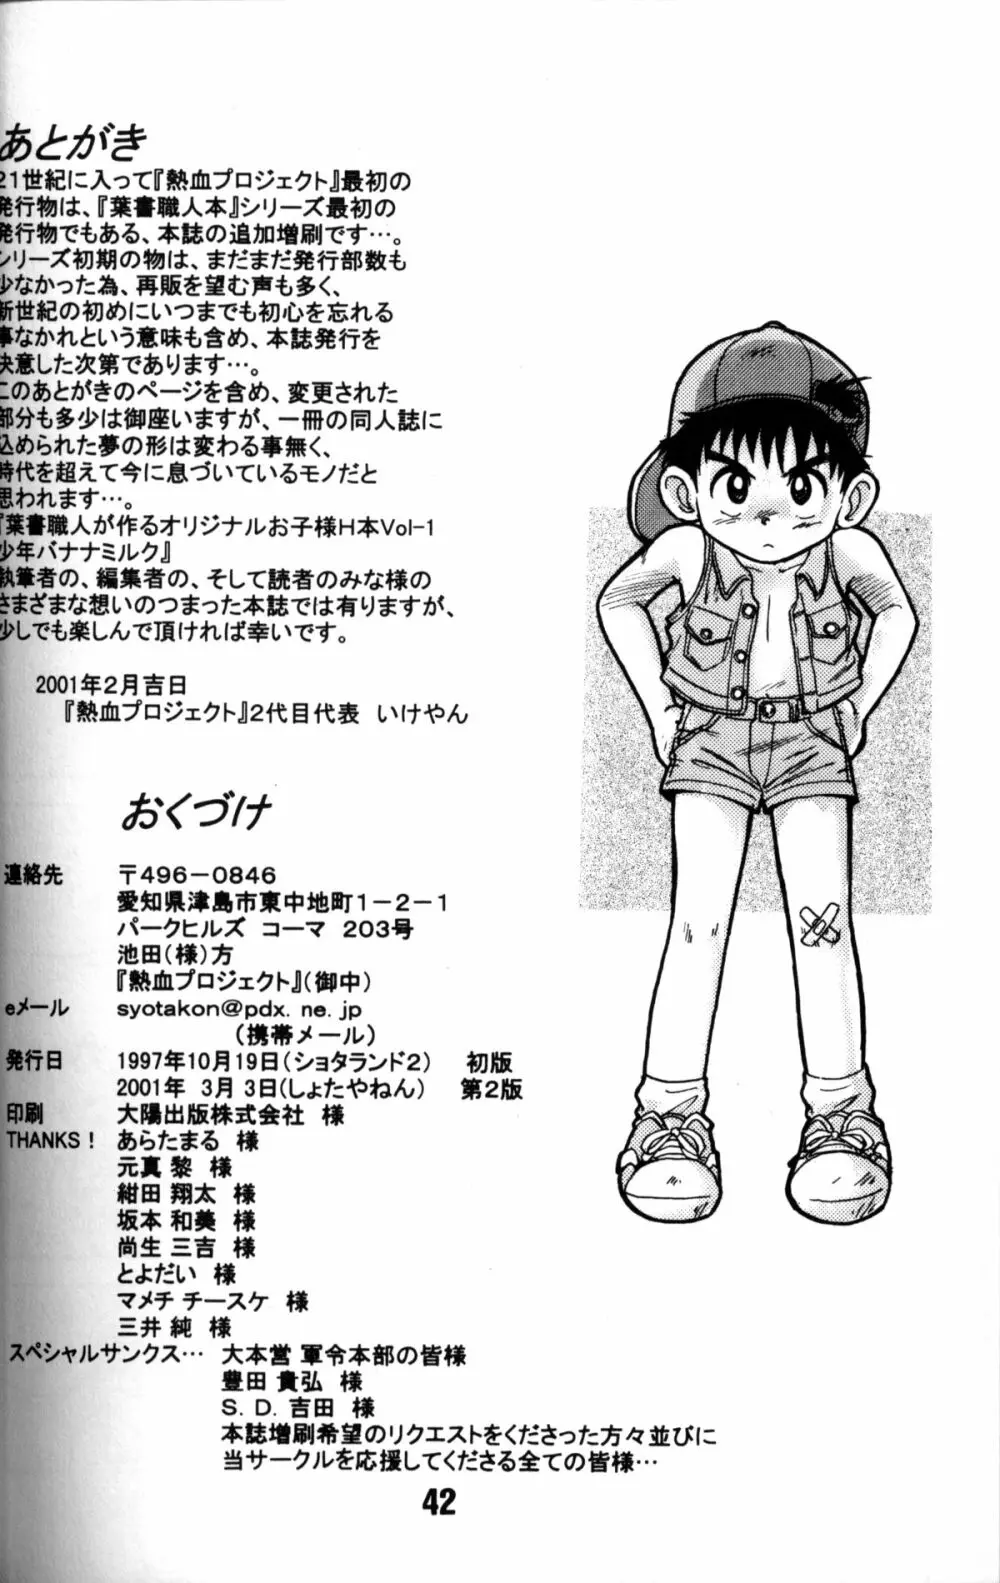 Anthology - Nekketsu Project - Volume 1 'Shounen Banana Milk' Page.41